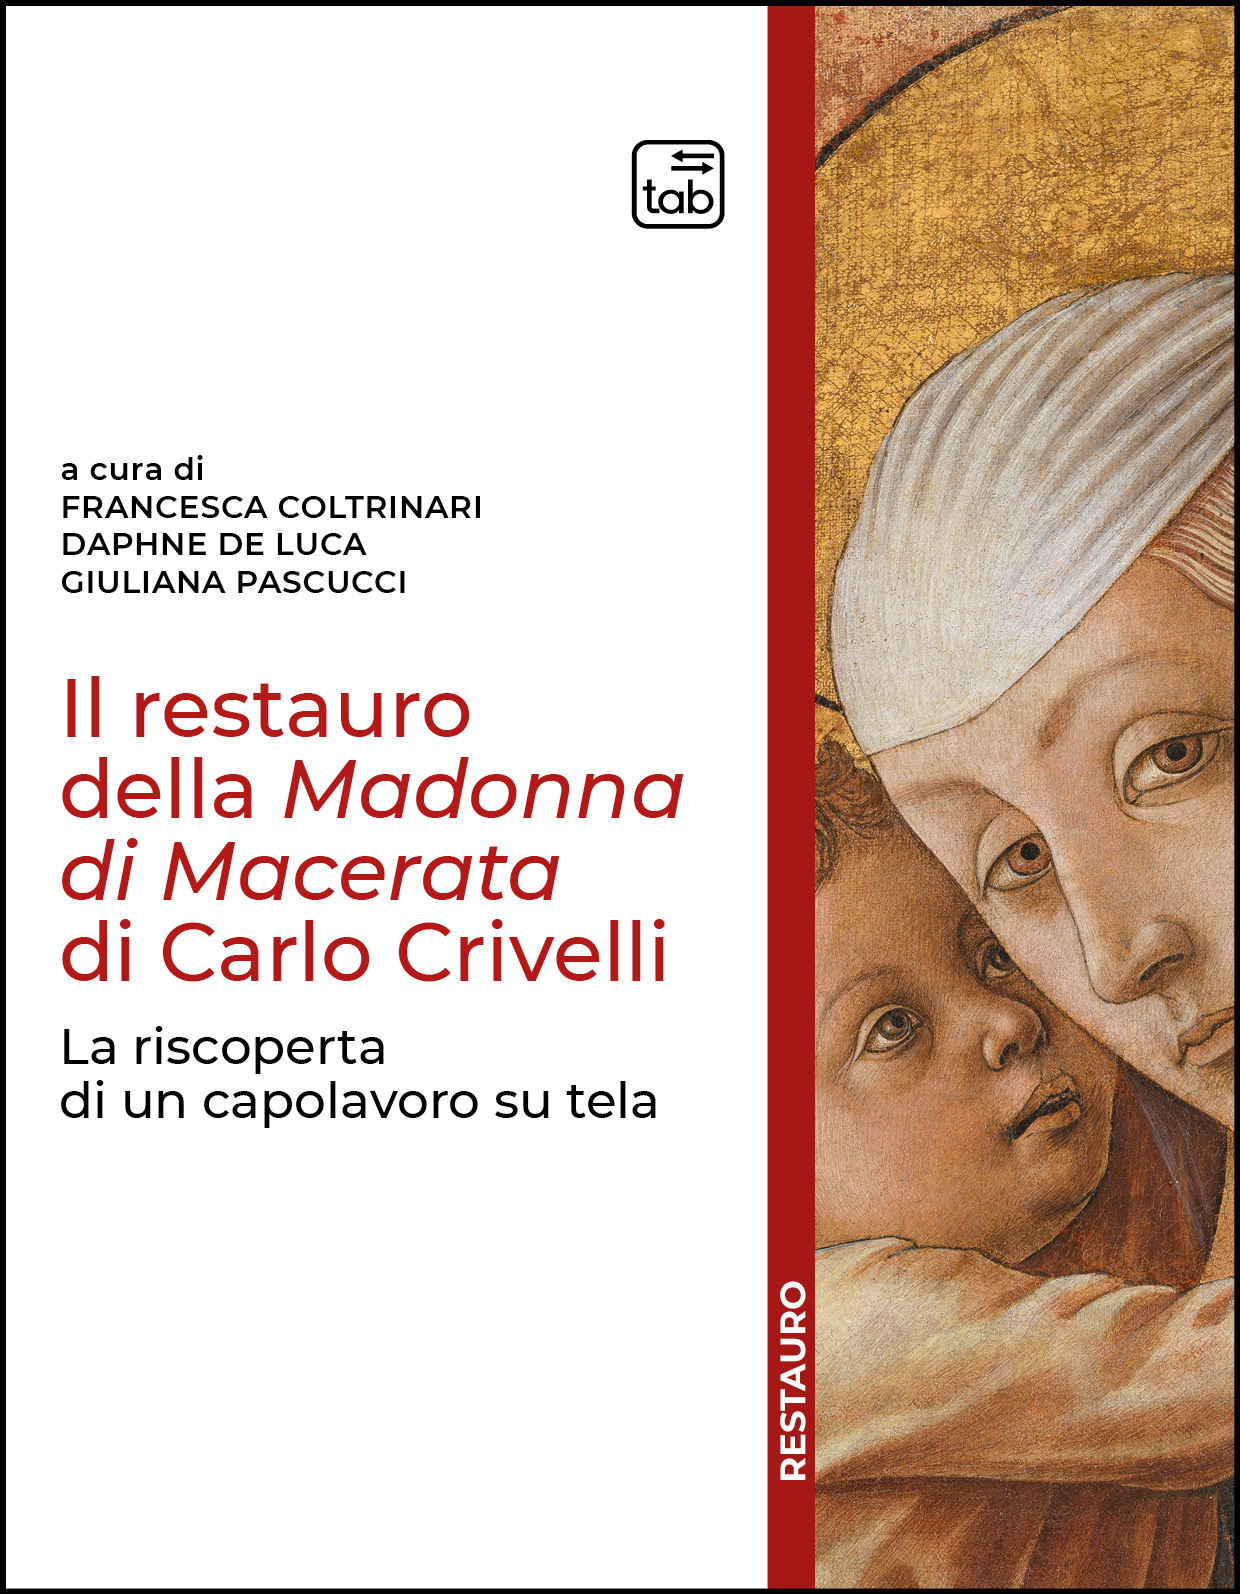 Il restauro della Madonna di Macerata di Carlo Crivelli